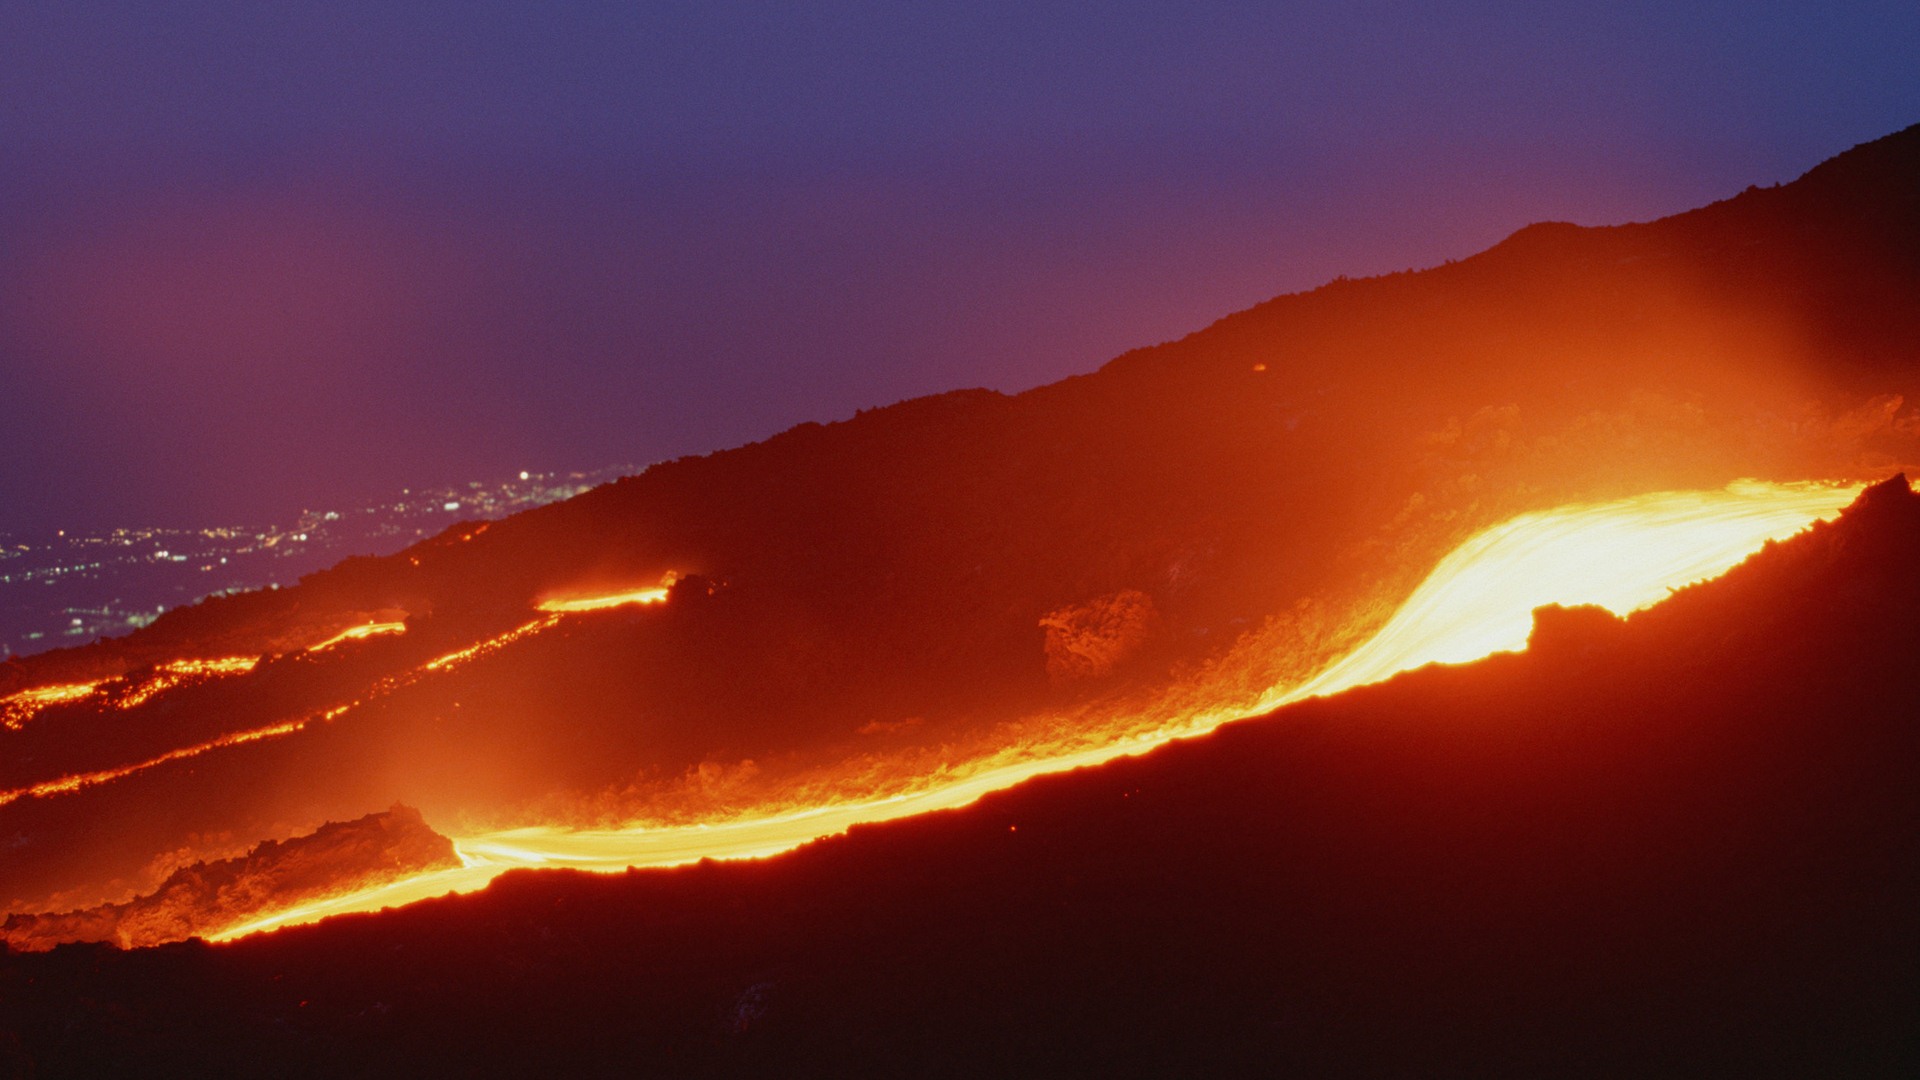 Vulkanausbruch von der herrlichen Landschaft Tapeten #6 - 1920x1080